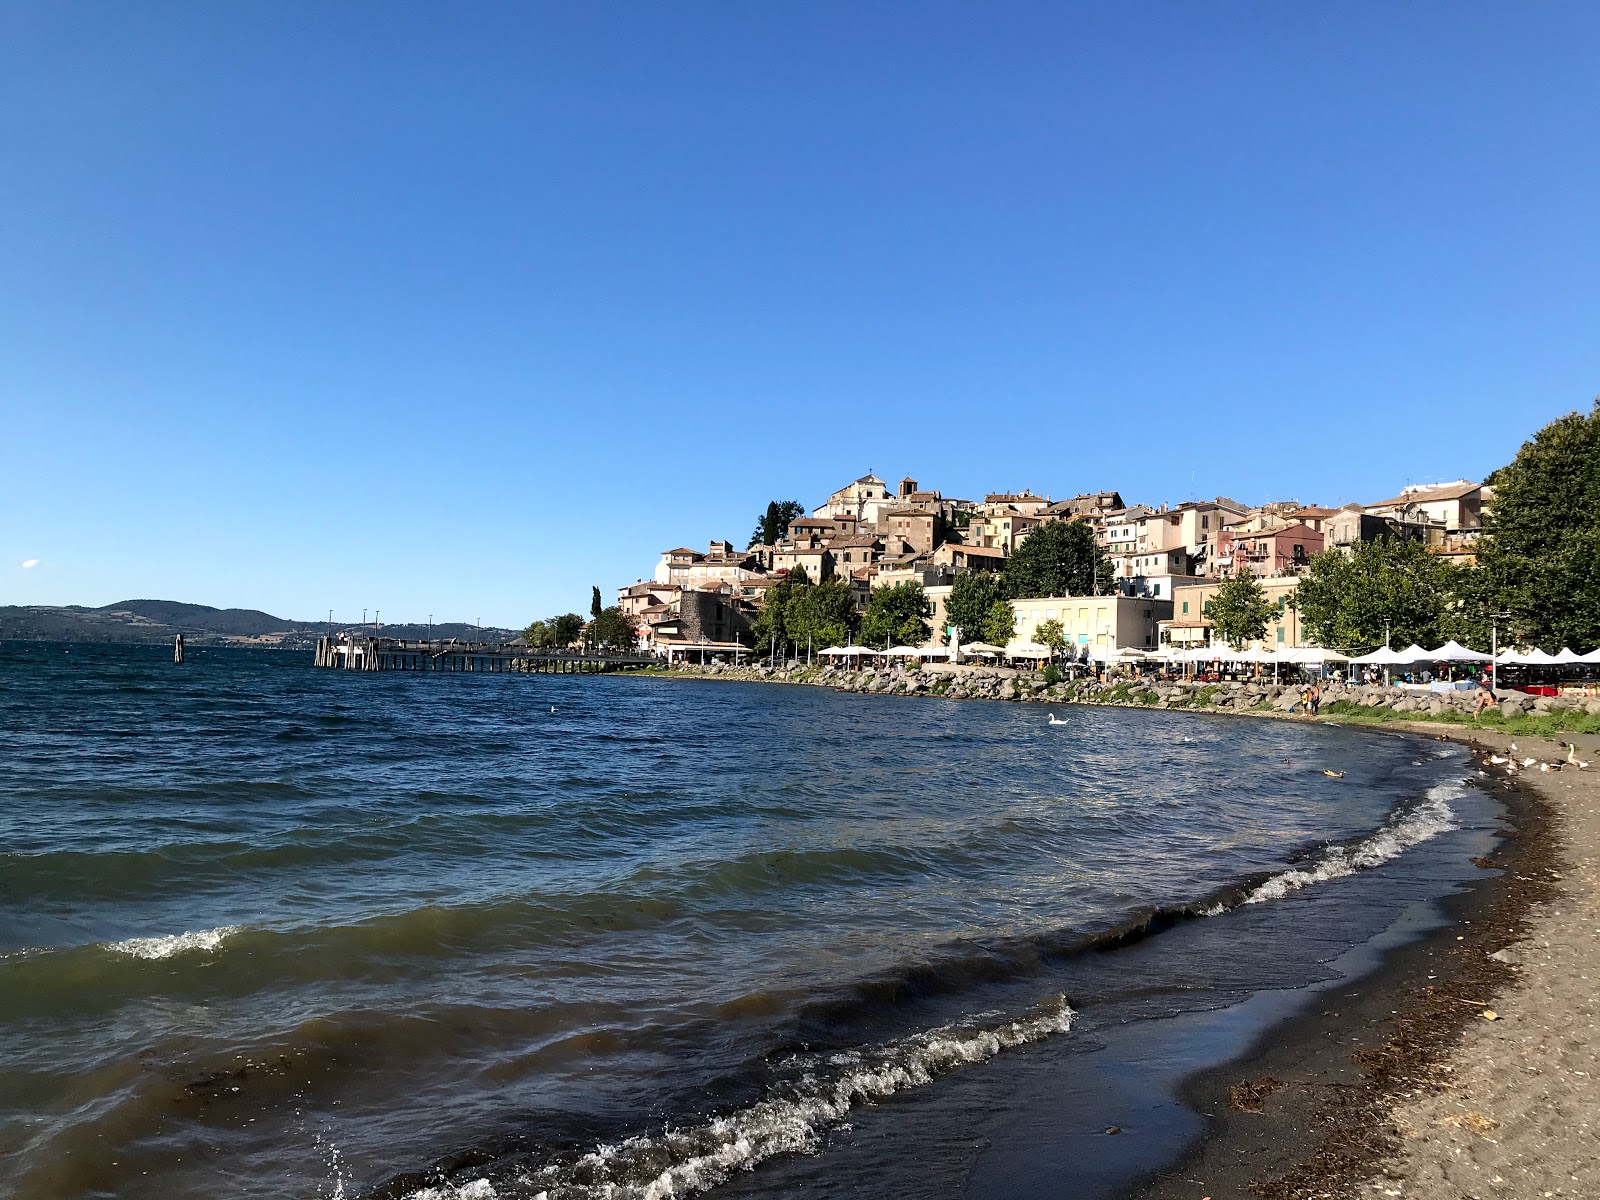 Fotografie cu Spiaggia Libera - locul popular printre cunoscătorii de relaxare